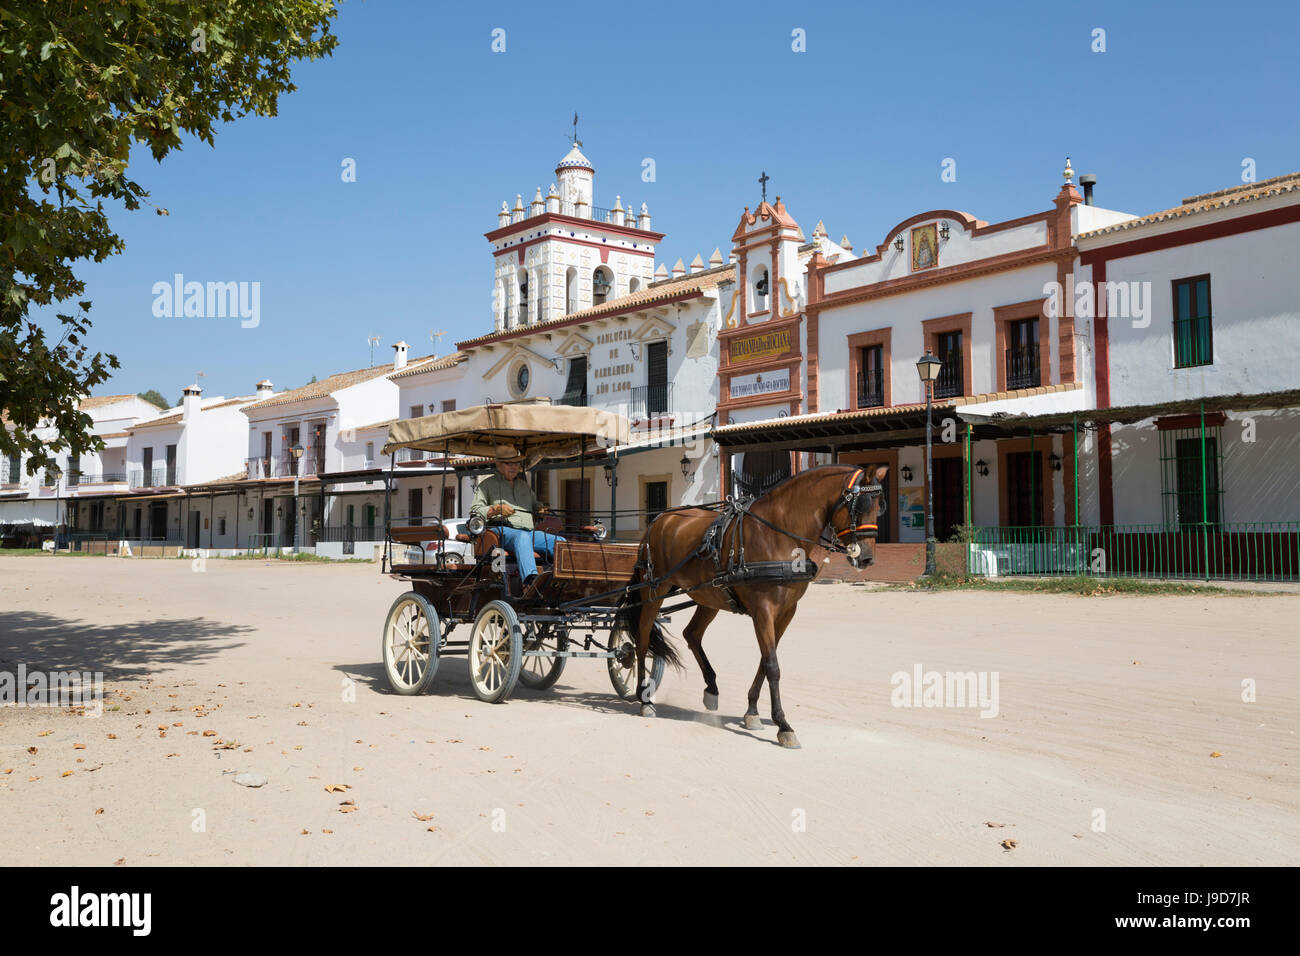 Carruaje de caballos cabalgando por las calles de arena con casas de hermandad, detrás de la aldea de El Rocío, la provincia de Huelva, Andalucía, España, Europa Foto de stock